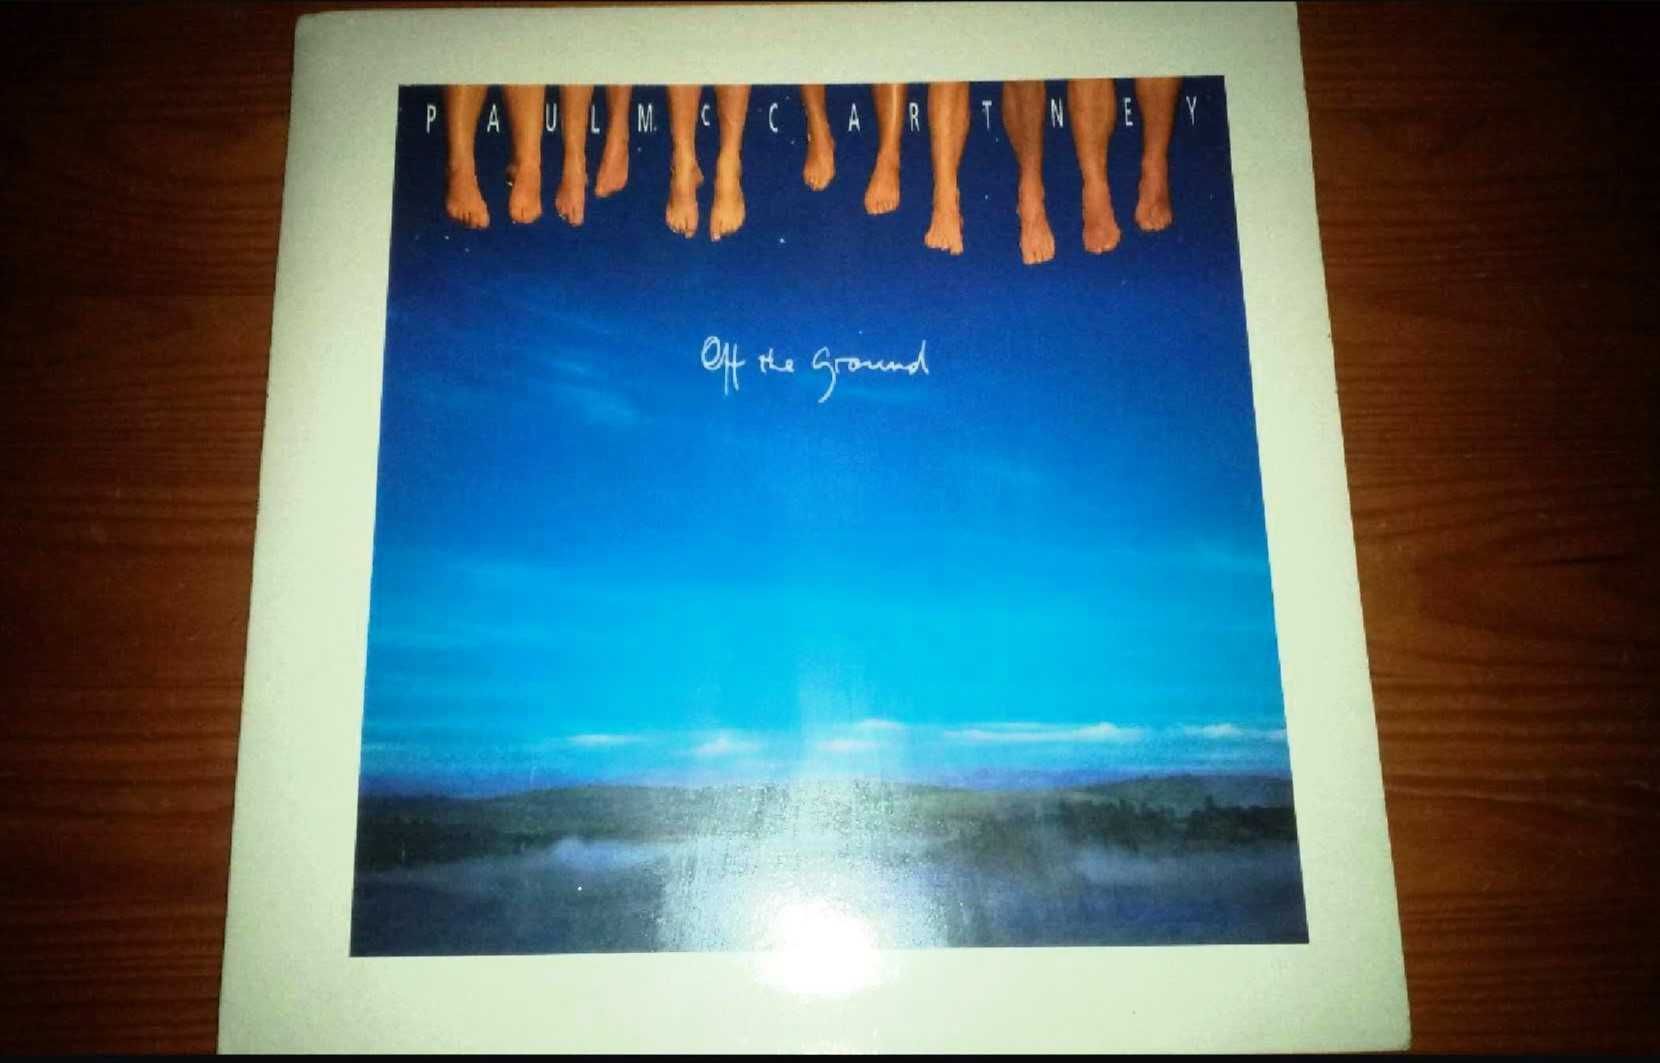 LP/Vinil Off The Ground - Paul McCartney (EDIÇÃO ORIGINAL PORTUGUESA)